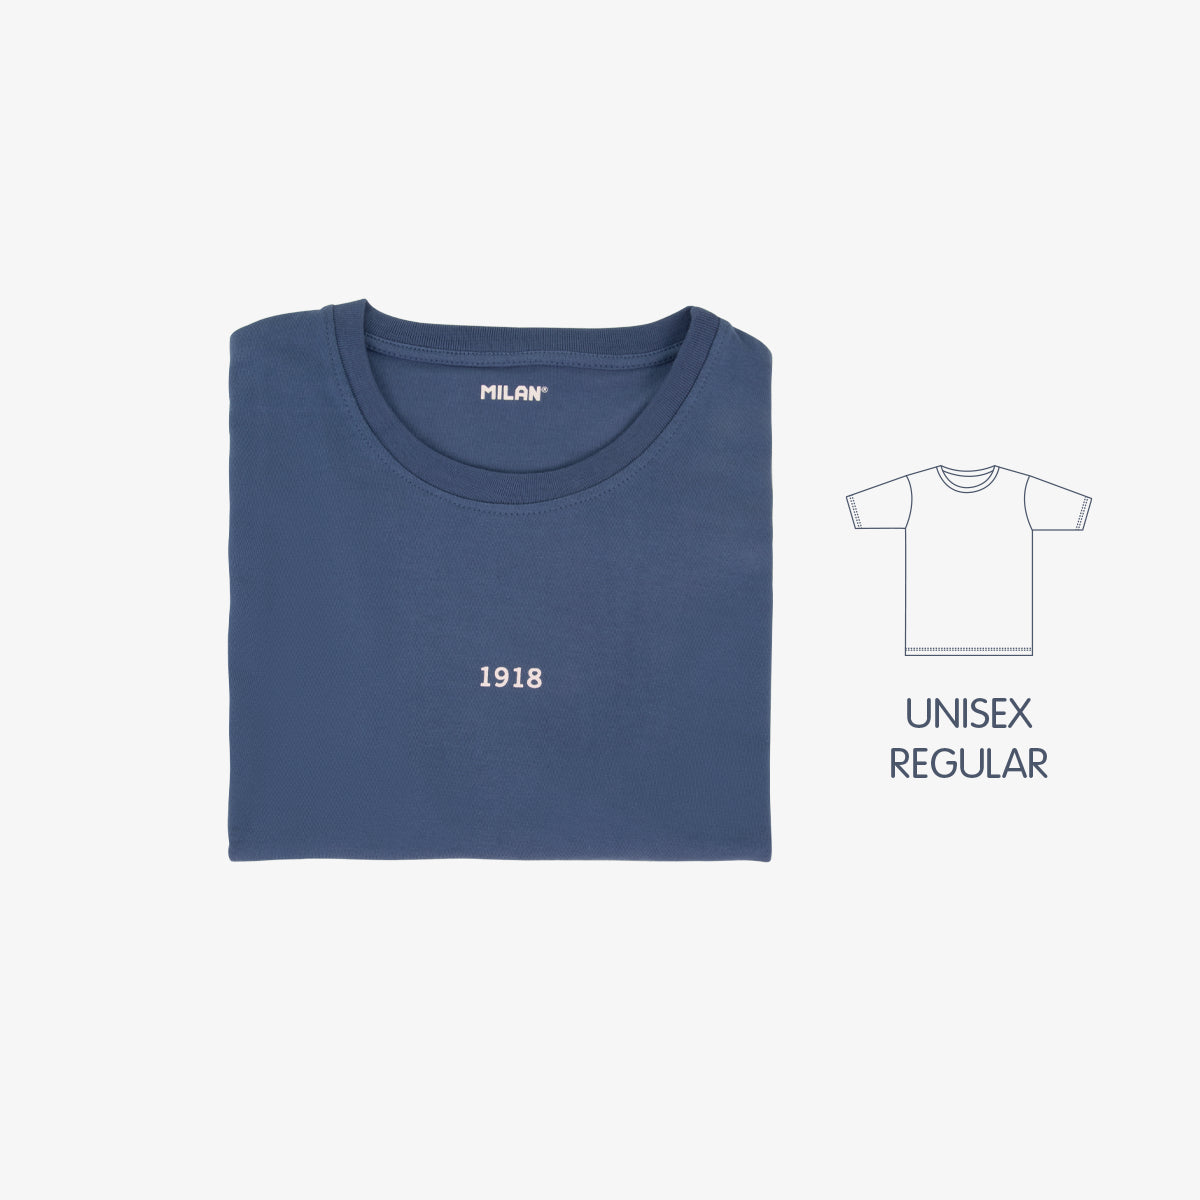 Camiseta hombre Slim Fit 430 since 1918, inspirada en las gomas de borrar MILAN